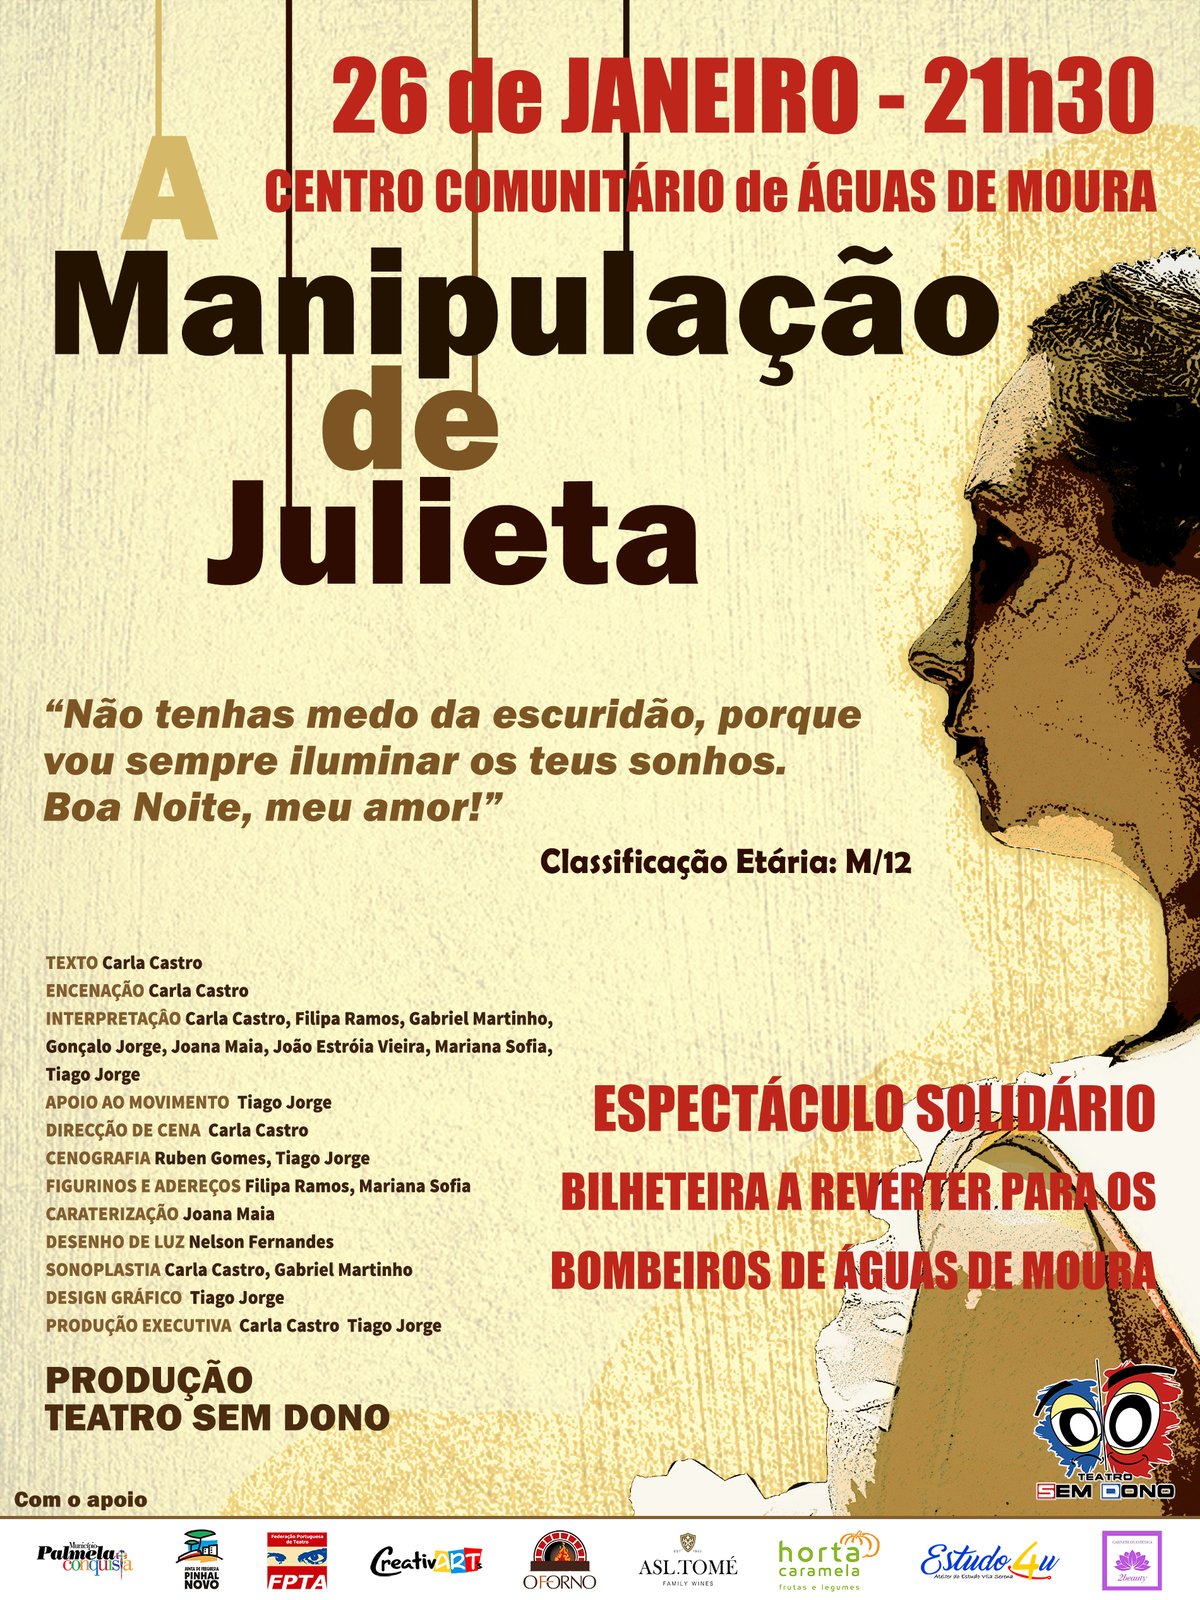 TEATRO "A MANIPULAÇÃO DE JULIETA"